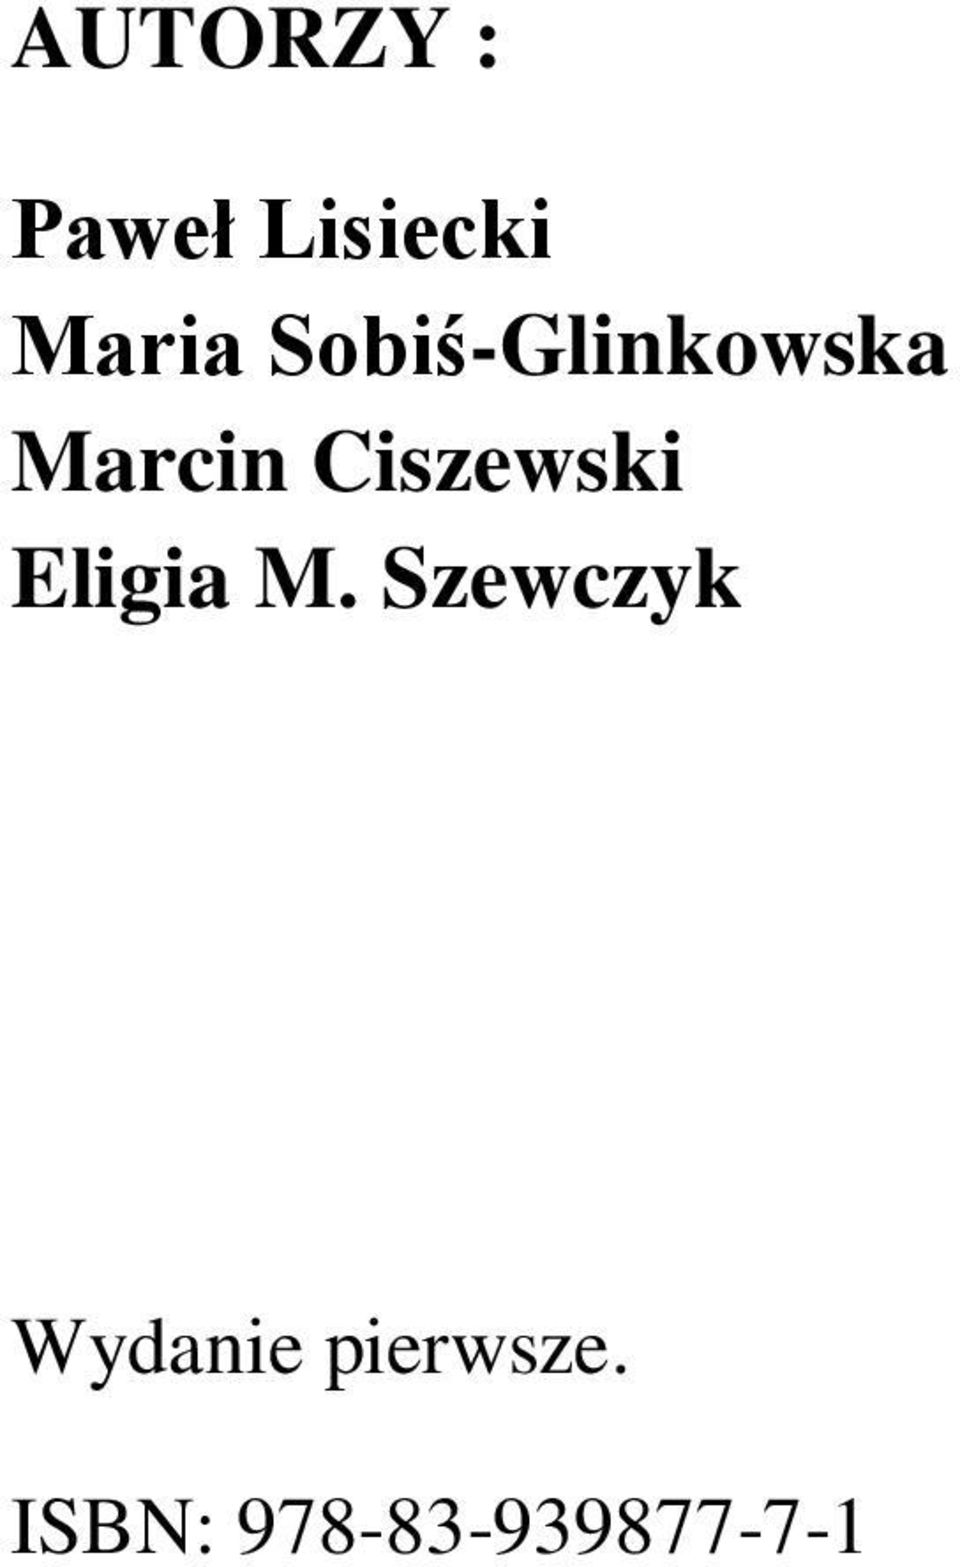 Ciszewski Eligia M.